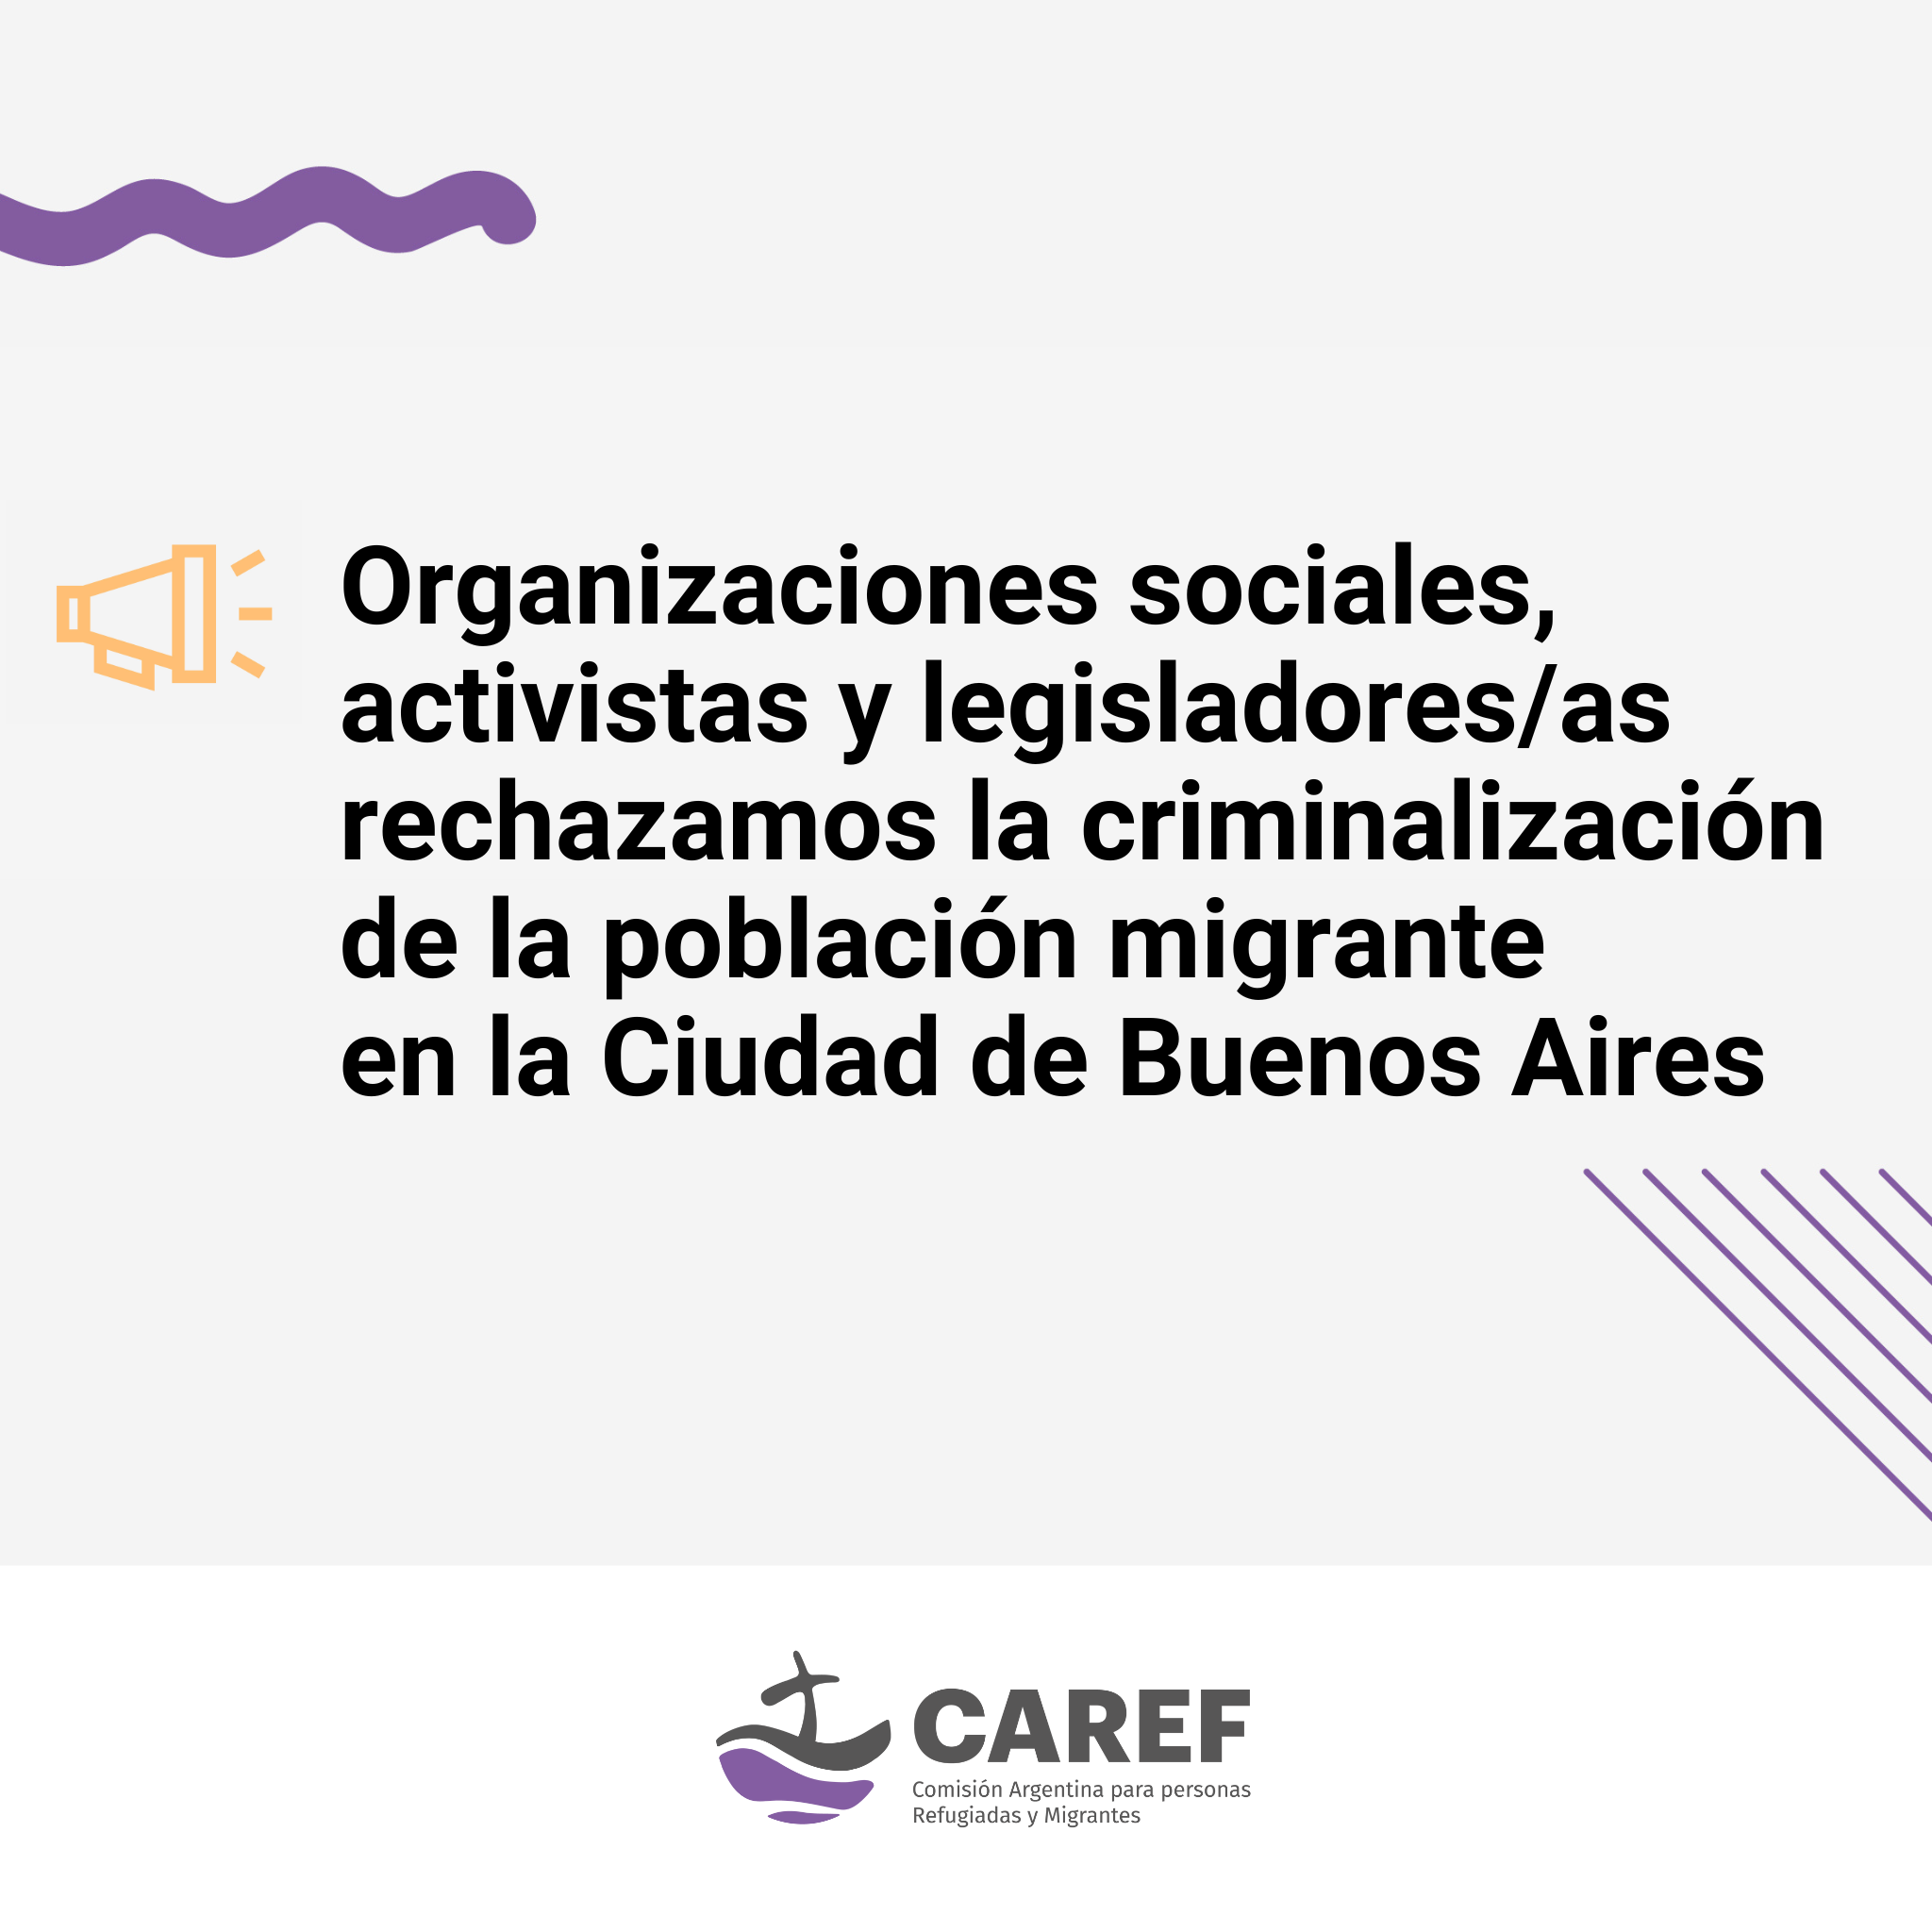 Organizaciones sociales, activistas y legisladores/as rechazamos la criminalización de la población migrante en la Ciudad de Buenos Aires